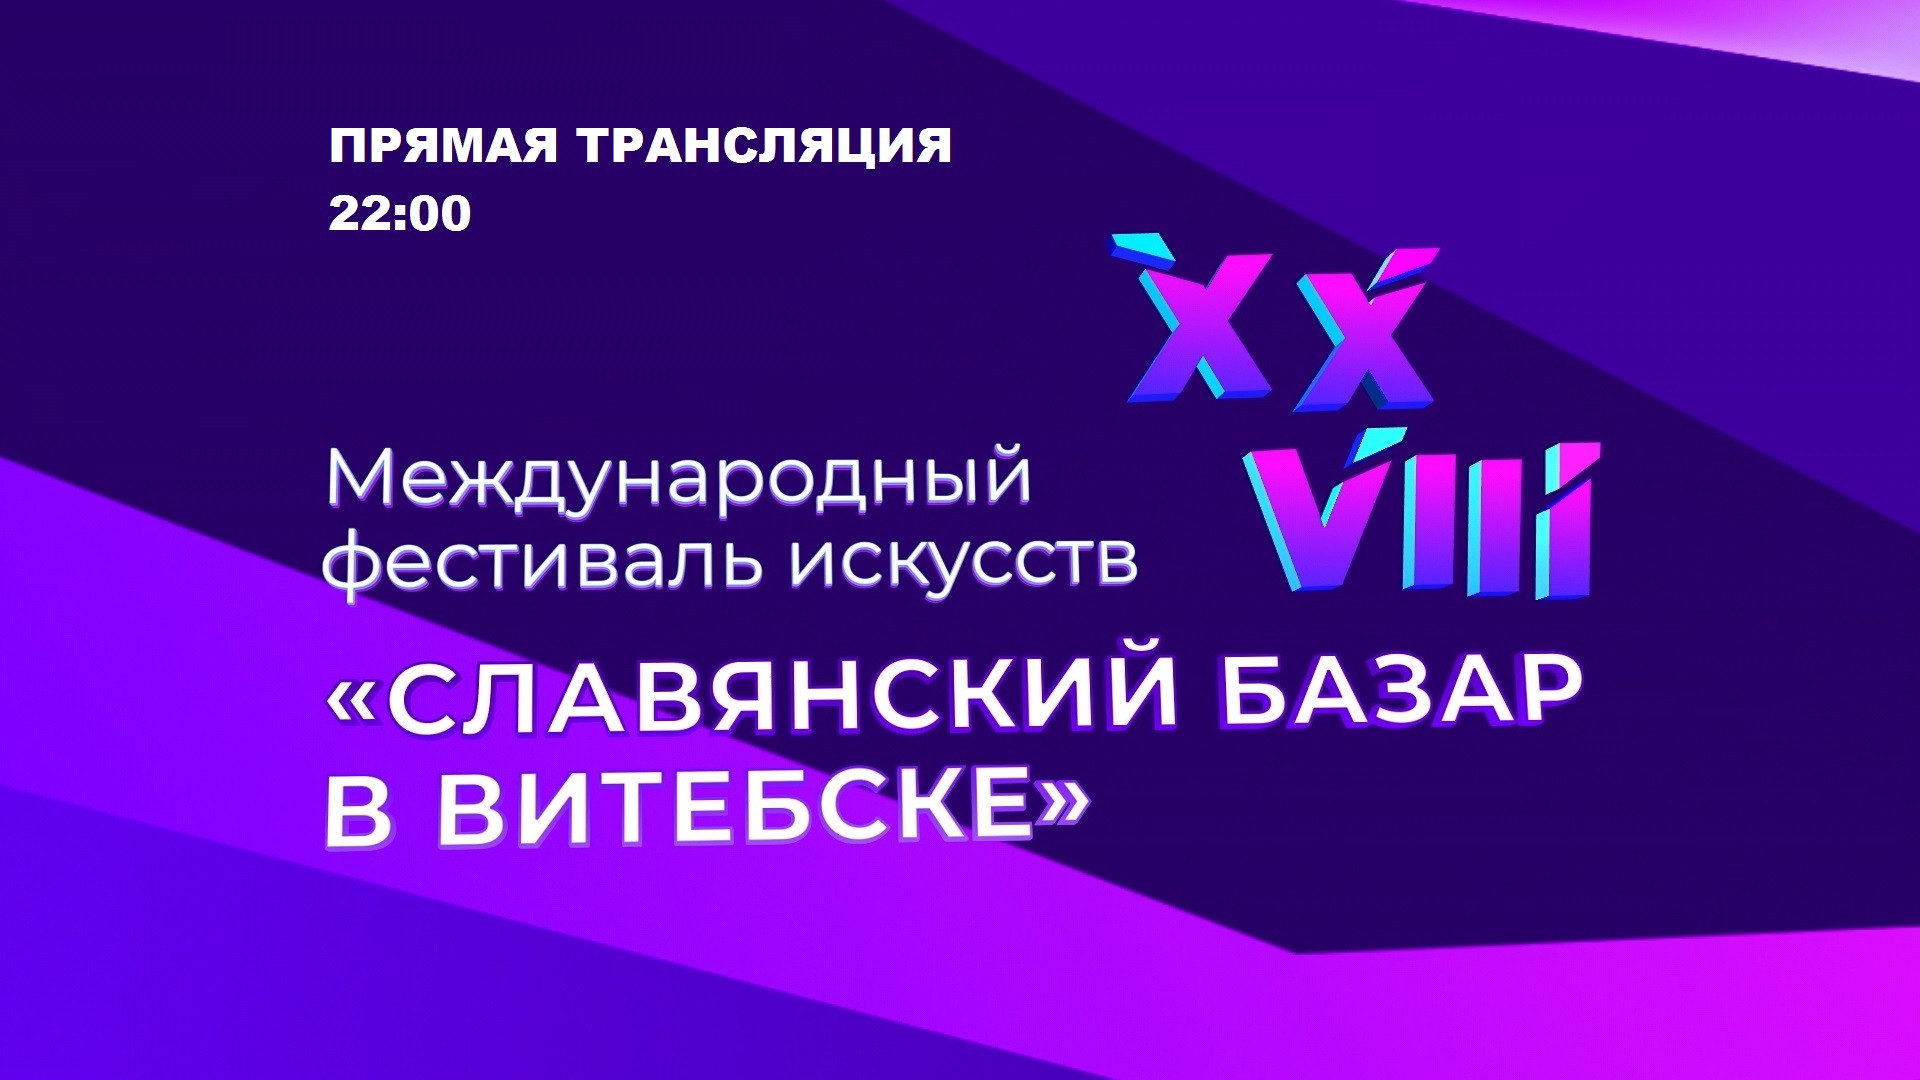 Прямая трансляция открытия «Славянского базара 2019»